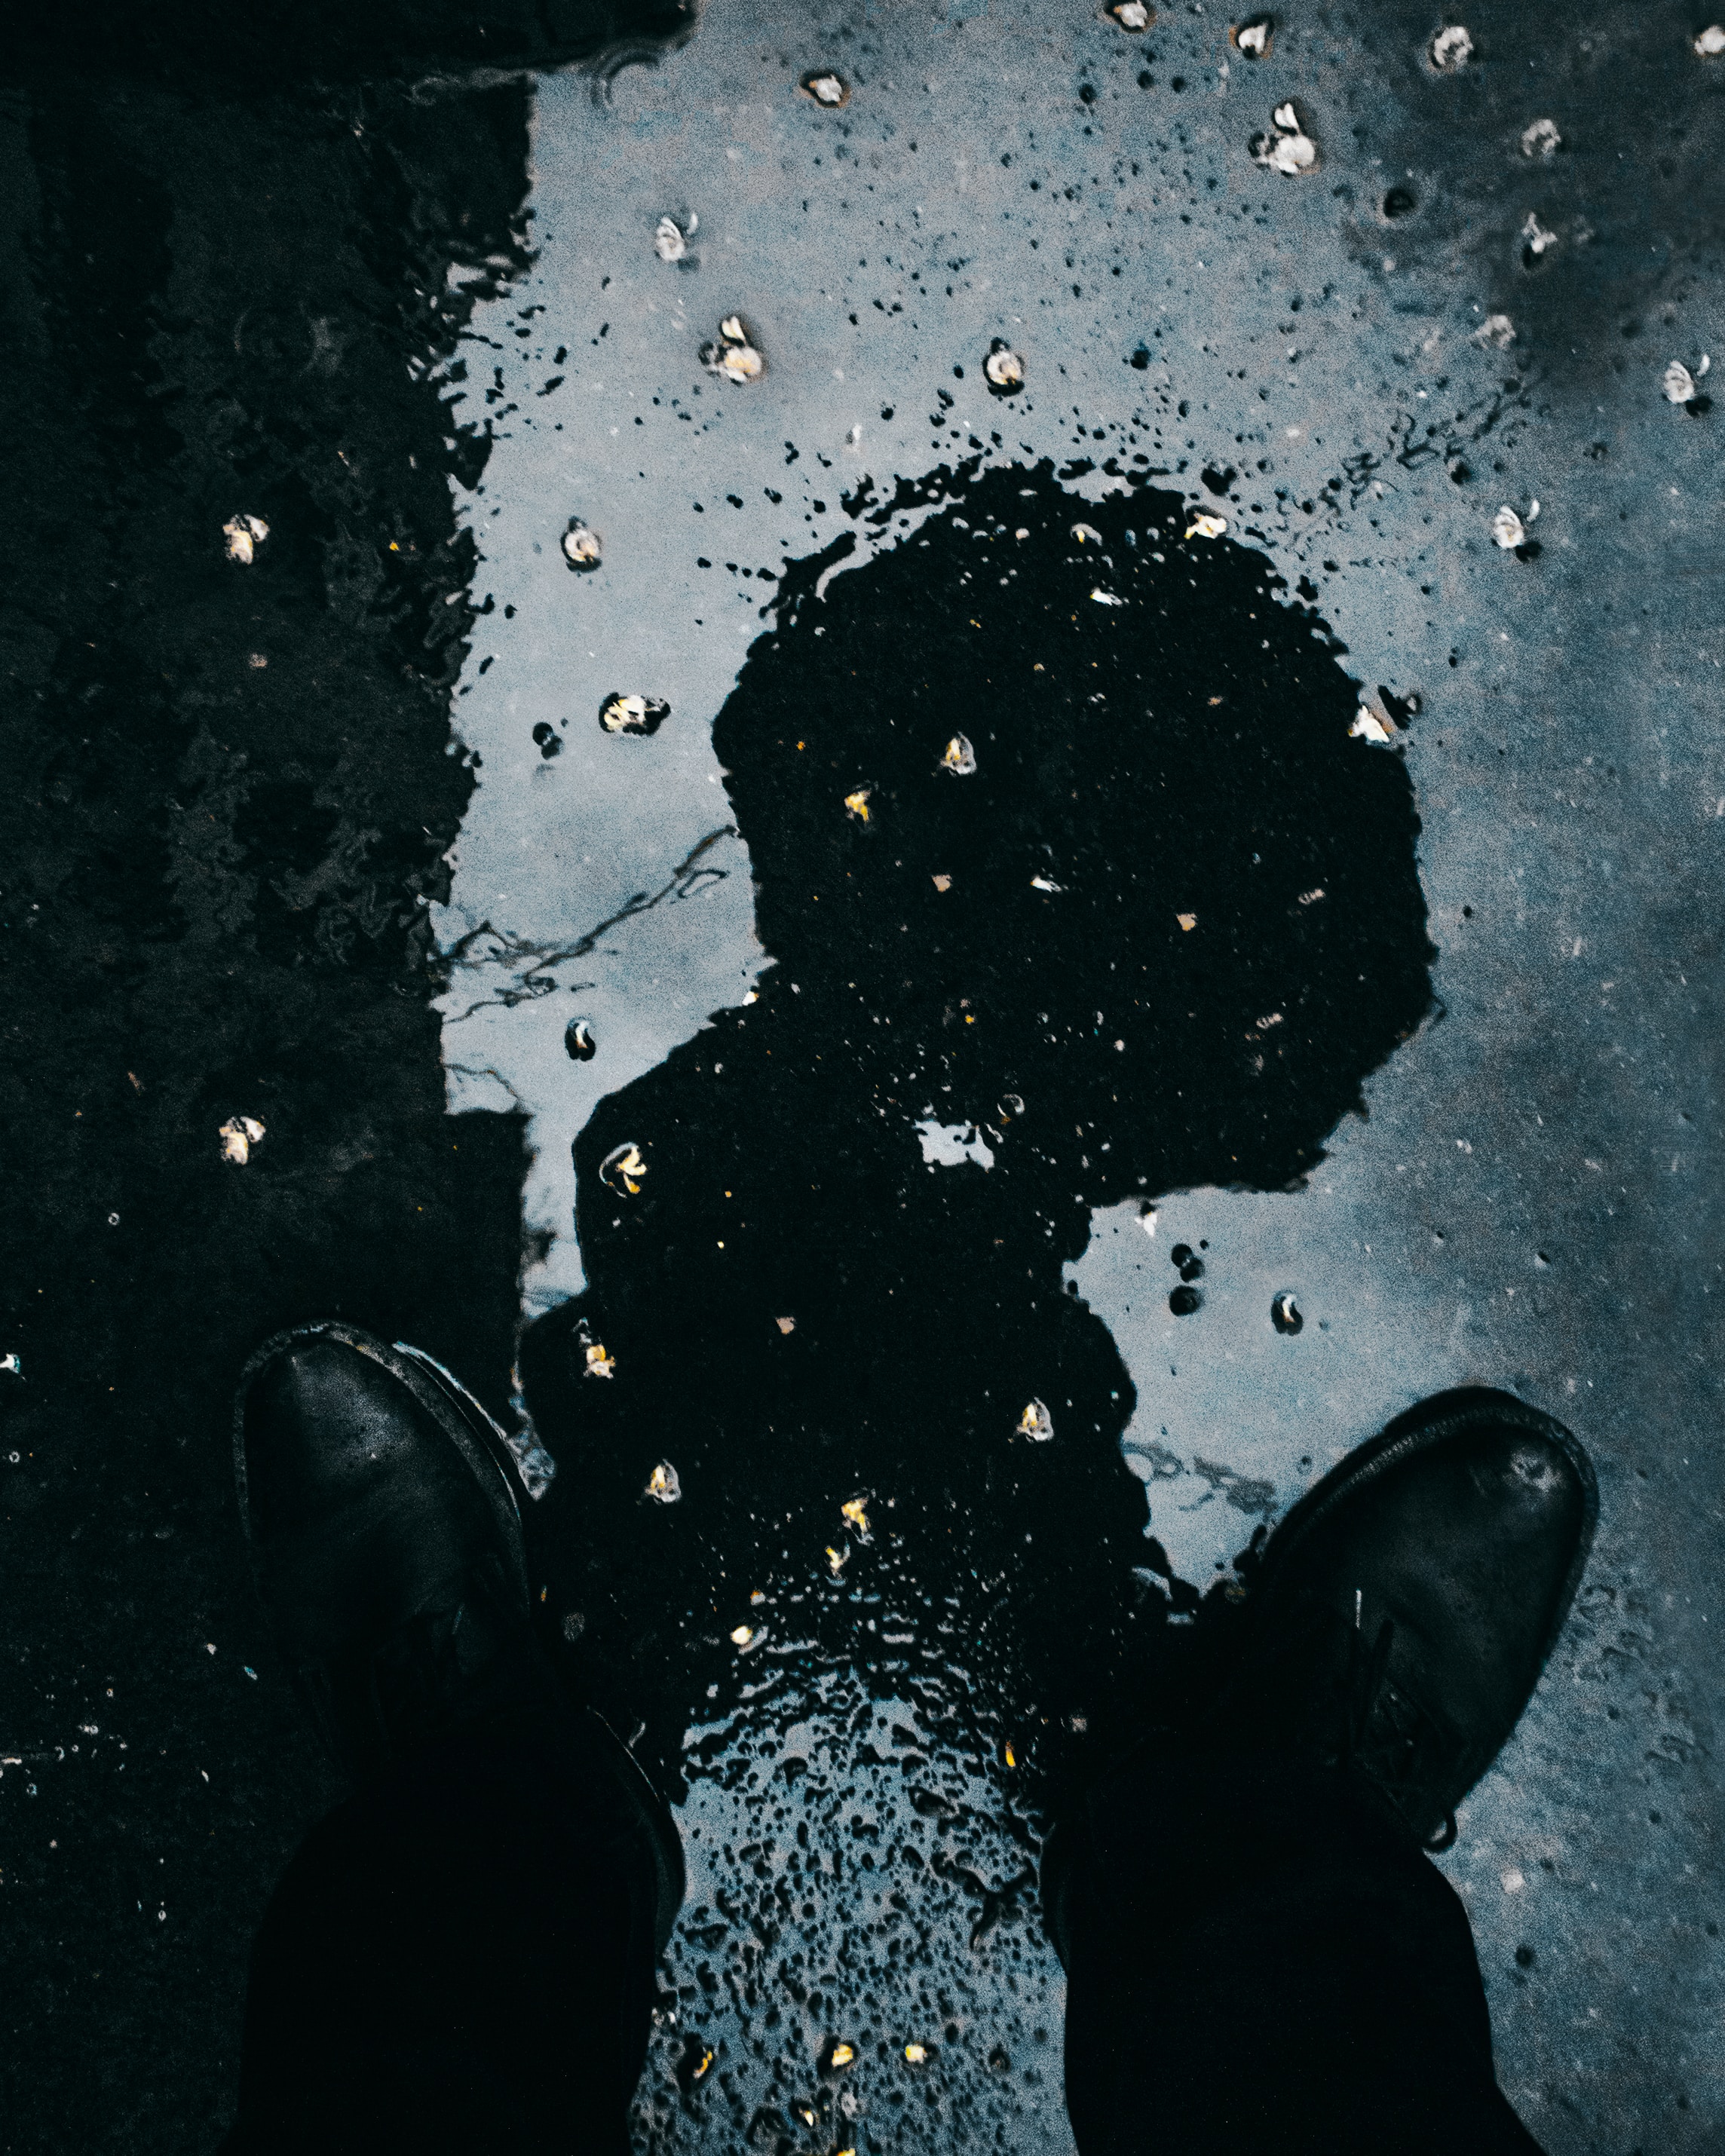 reflection, miscellanea, miscellaneous, legs, wet, asphalt, puddle High Definition image